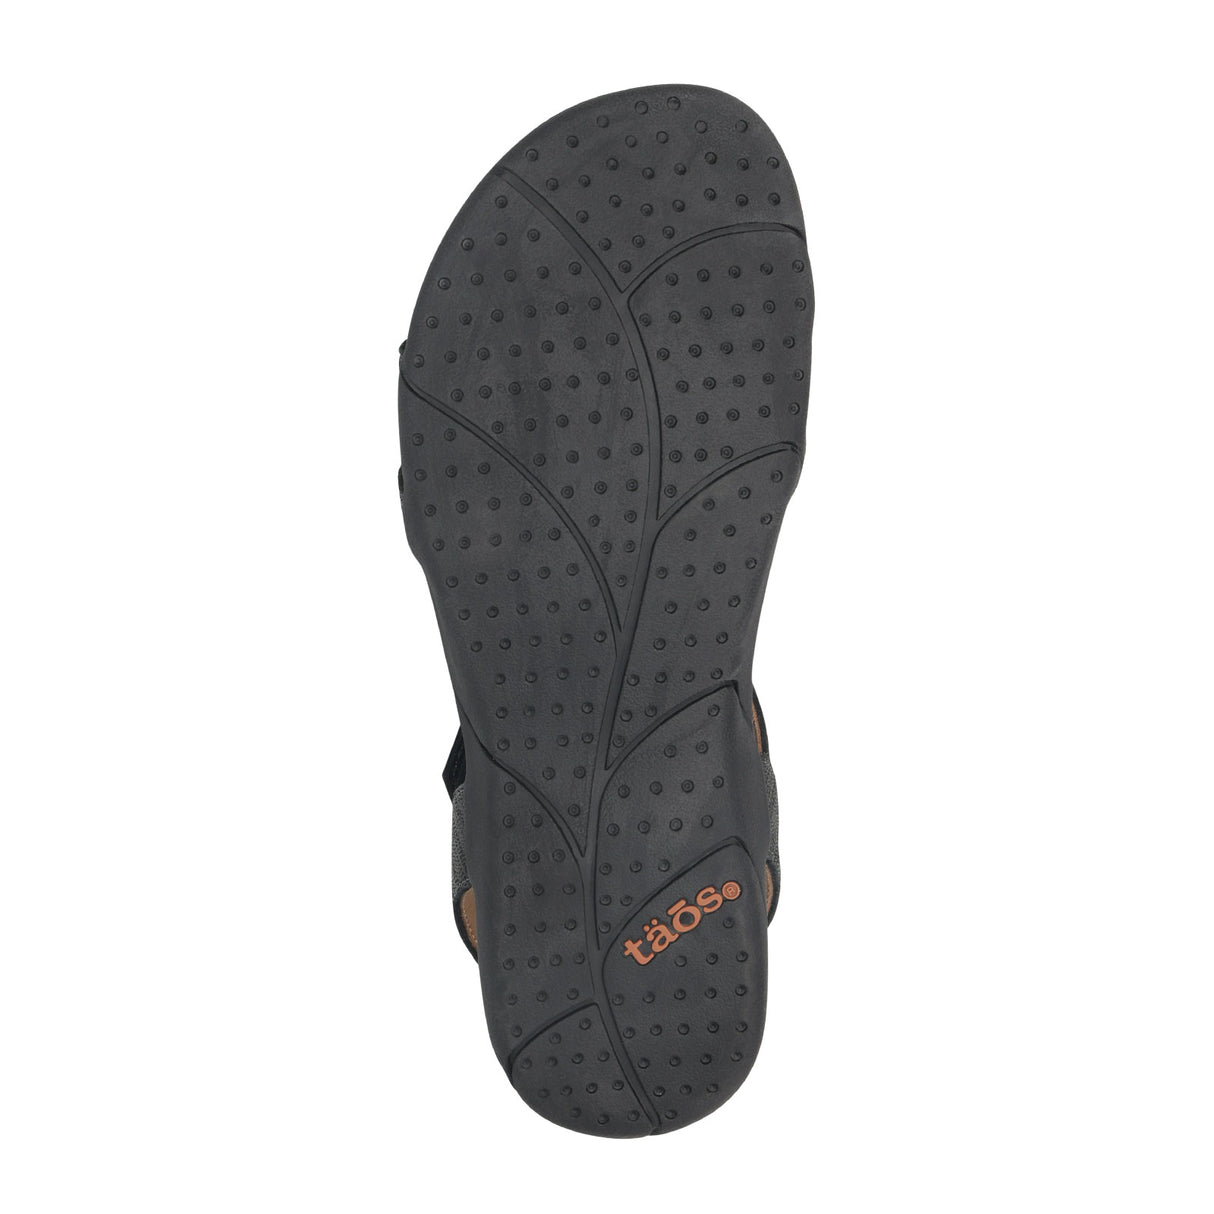 Taos Trophy 2 Backstrap Sandal (Women) - Black Emboss Sandals - Backstrap - The Heel Shoe Fitters